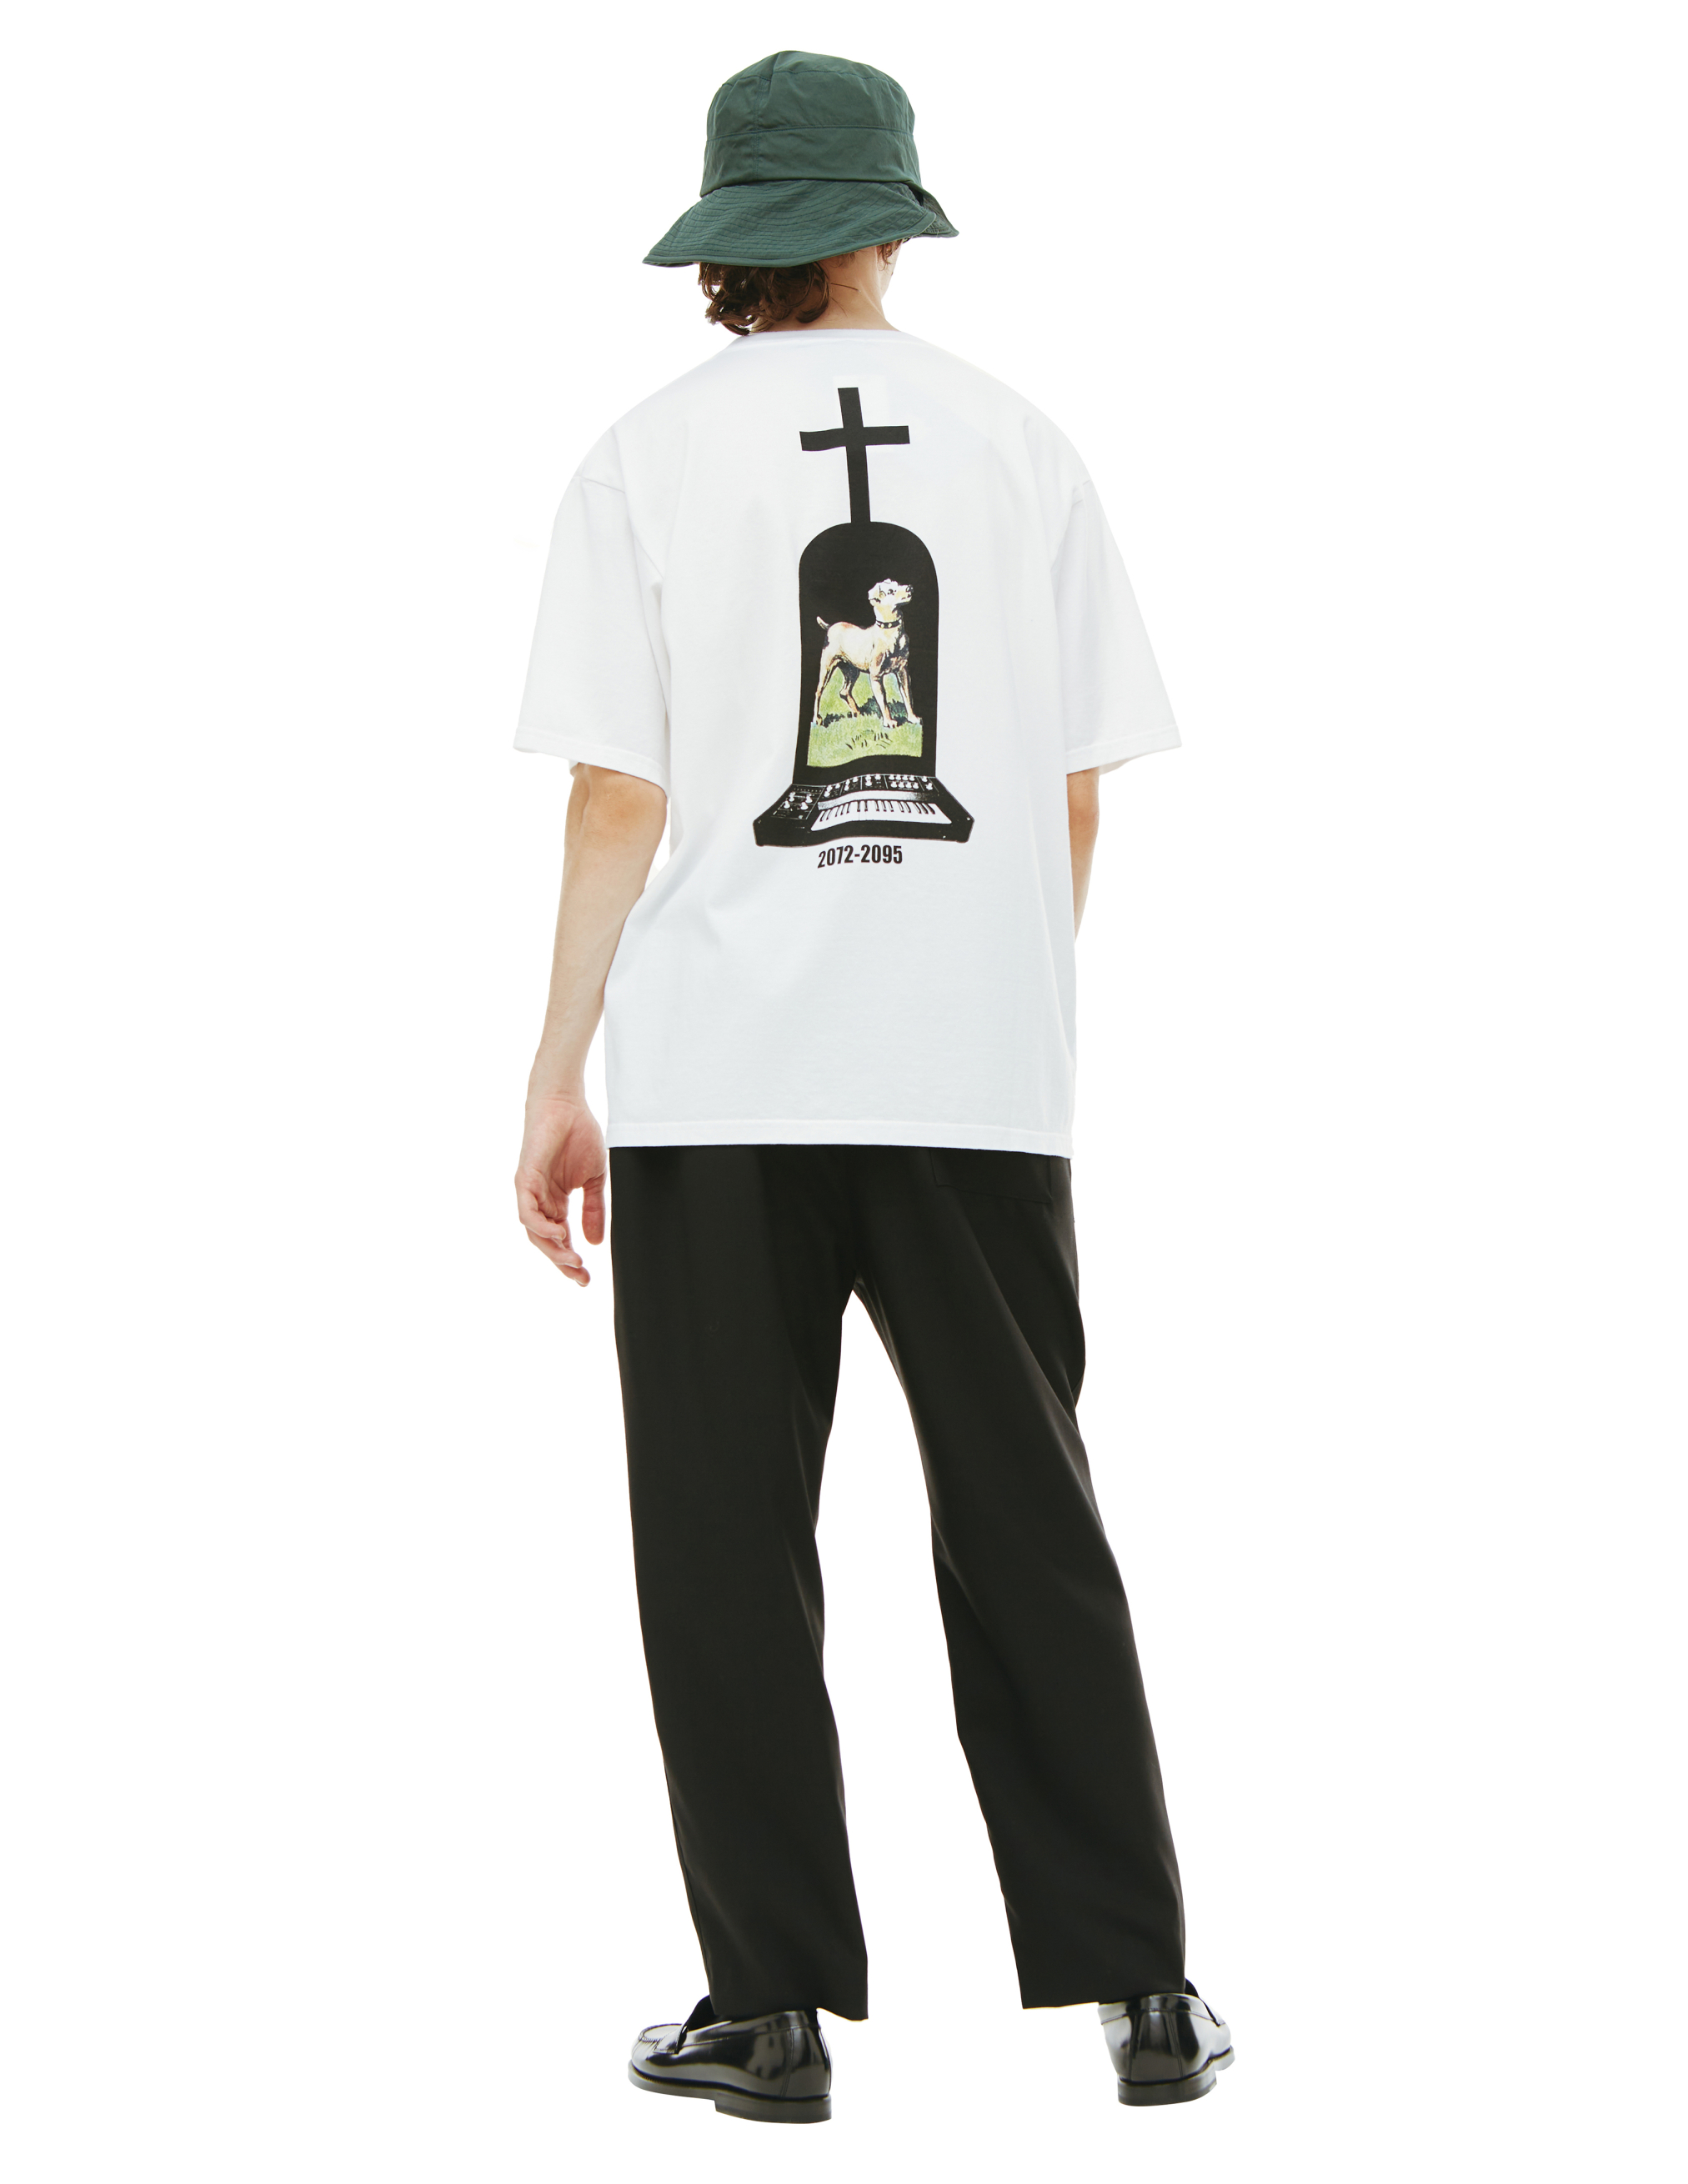 Хлопковая футболка с принтом Undercover UC1B3803, размер 5;4 - фото 3